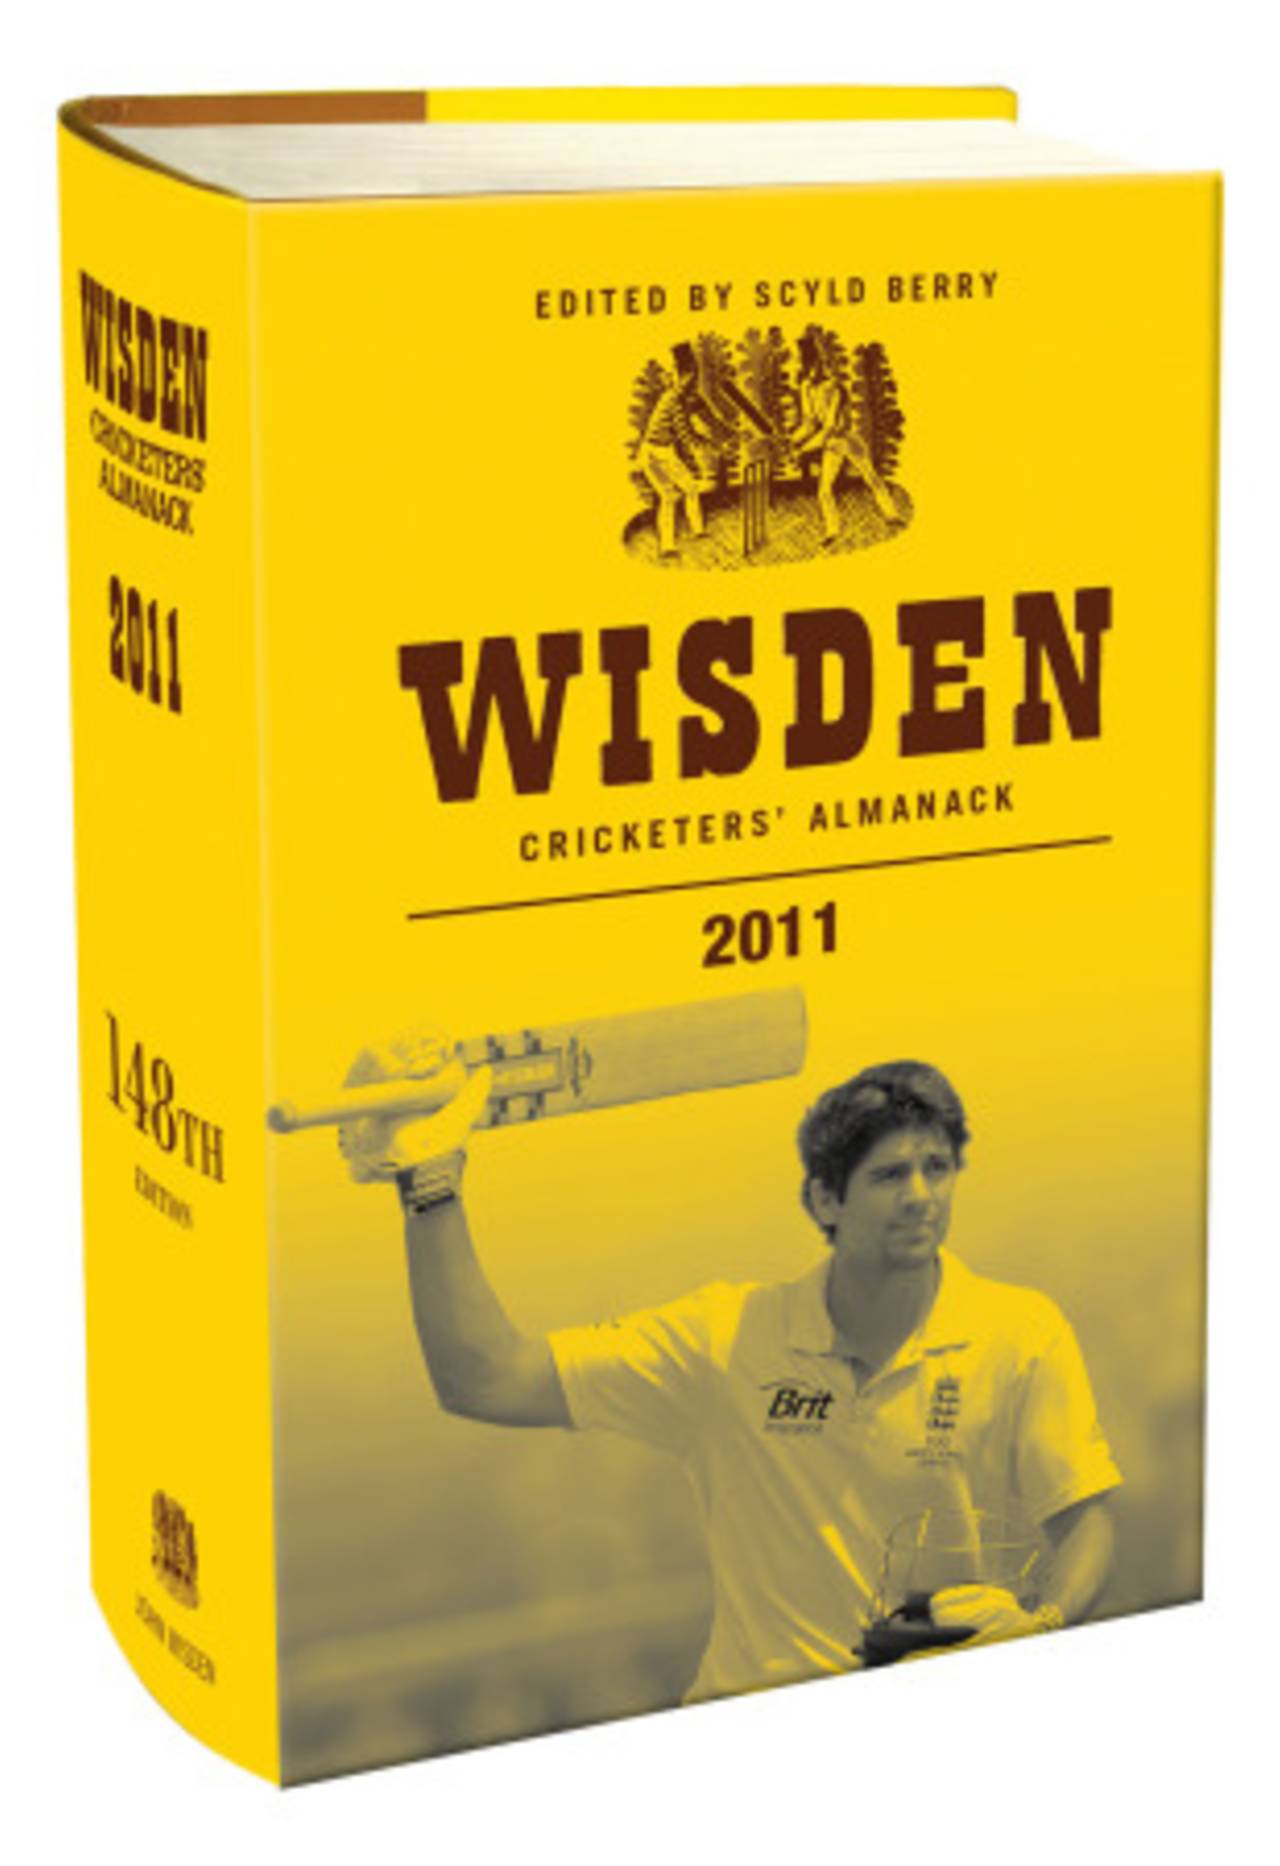 Alastair Cook adorns the cover of the 2011 Wisden&nbsp;&nbsp;&bull;&nbsp;&nbsp;John Wisden & Co